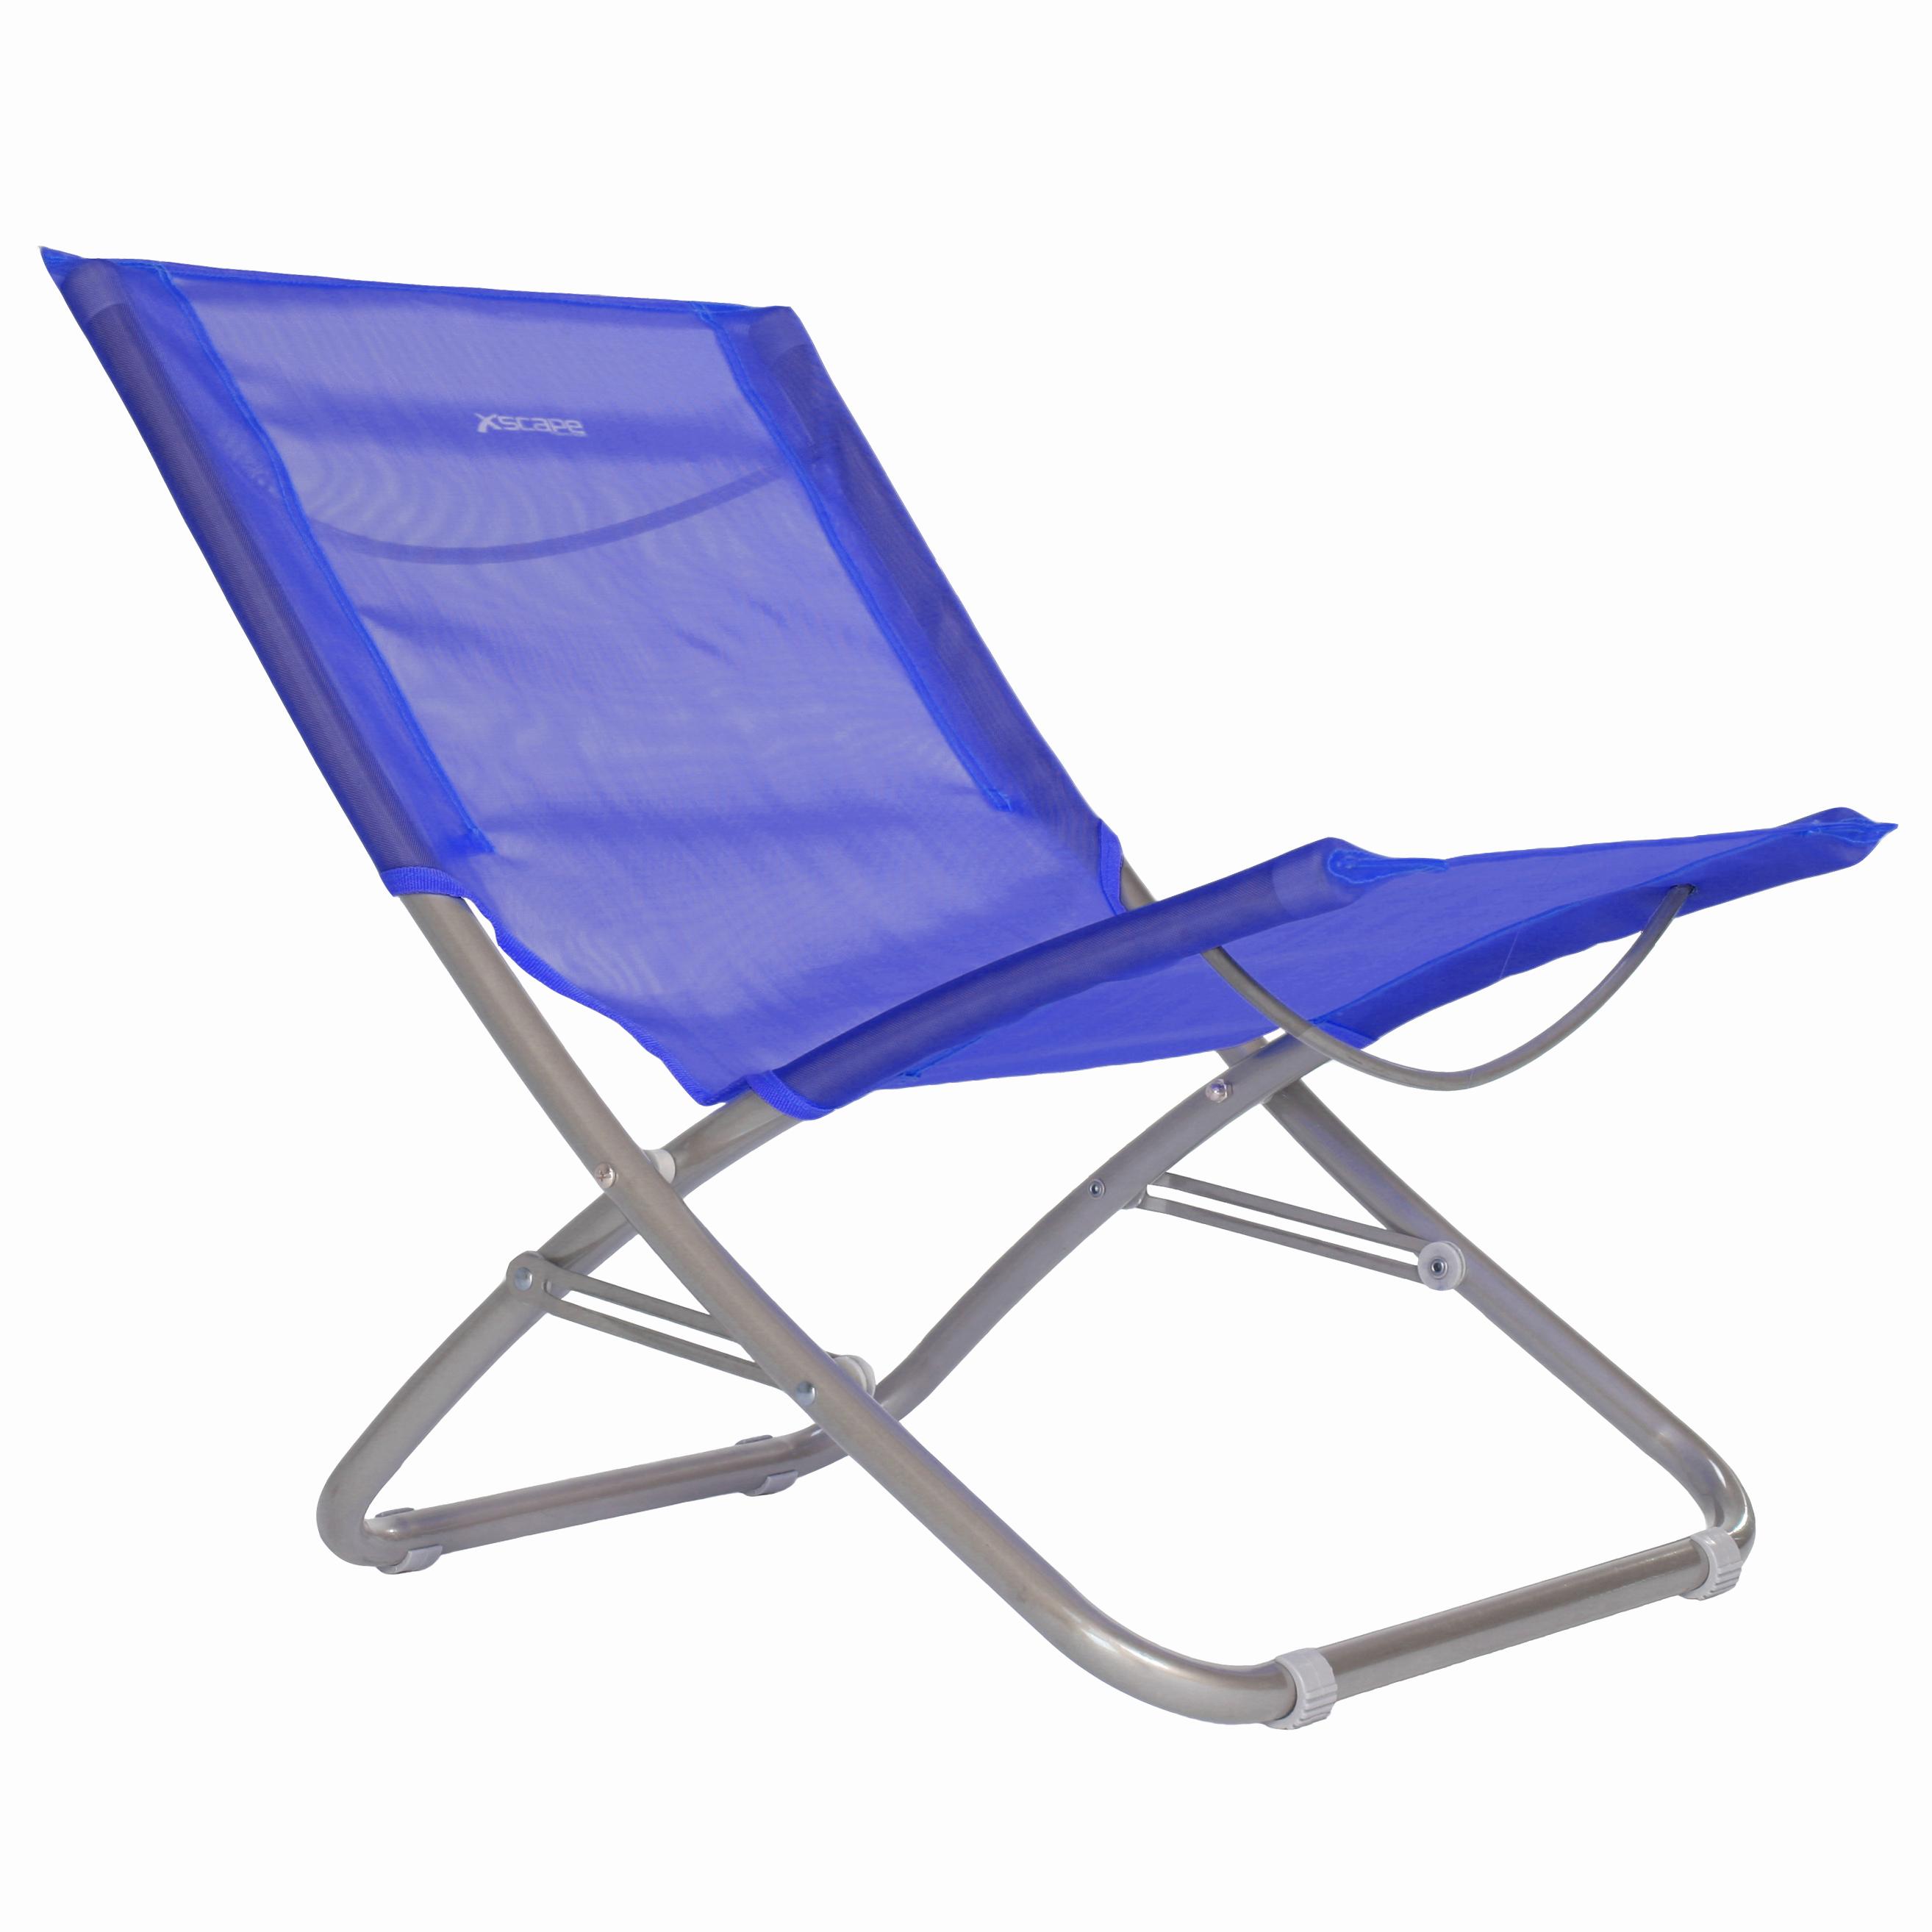 Tri Folding Beach Chair The Best Chair Review Blog